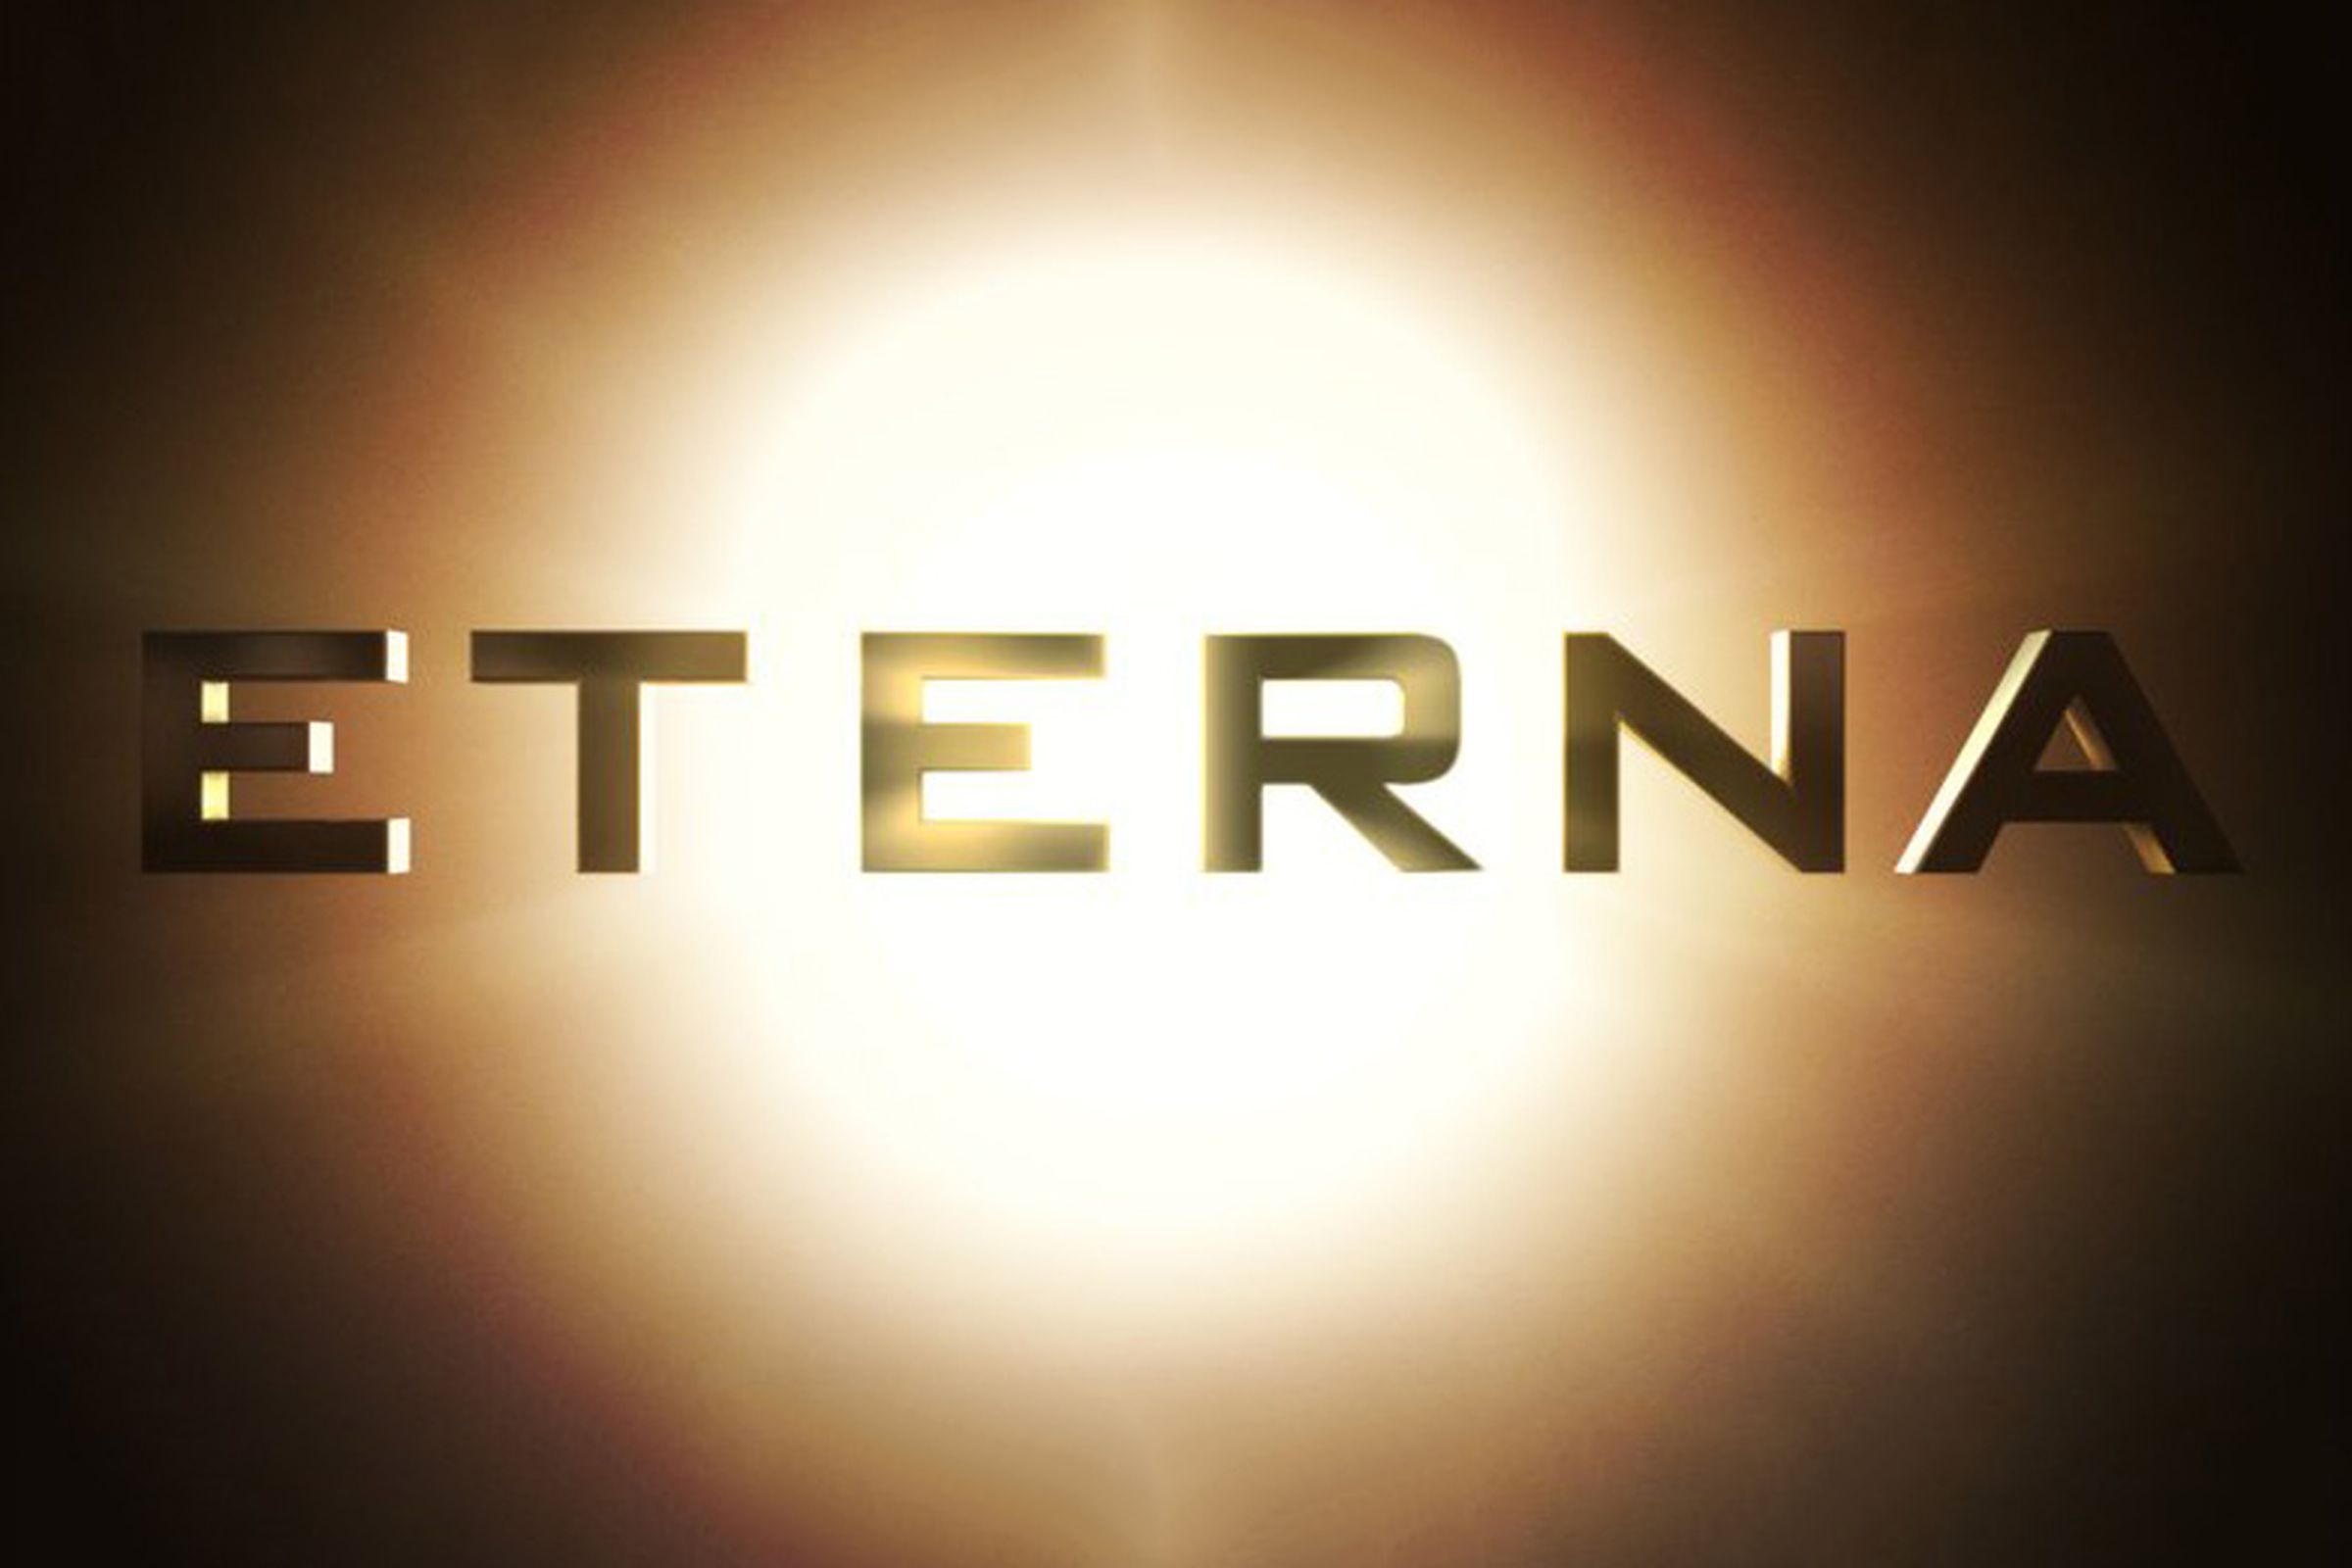 Eterna (official)